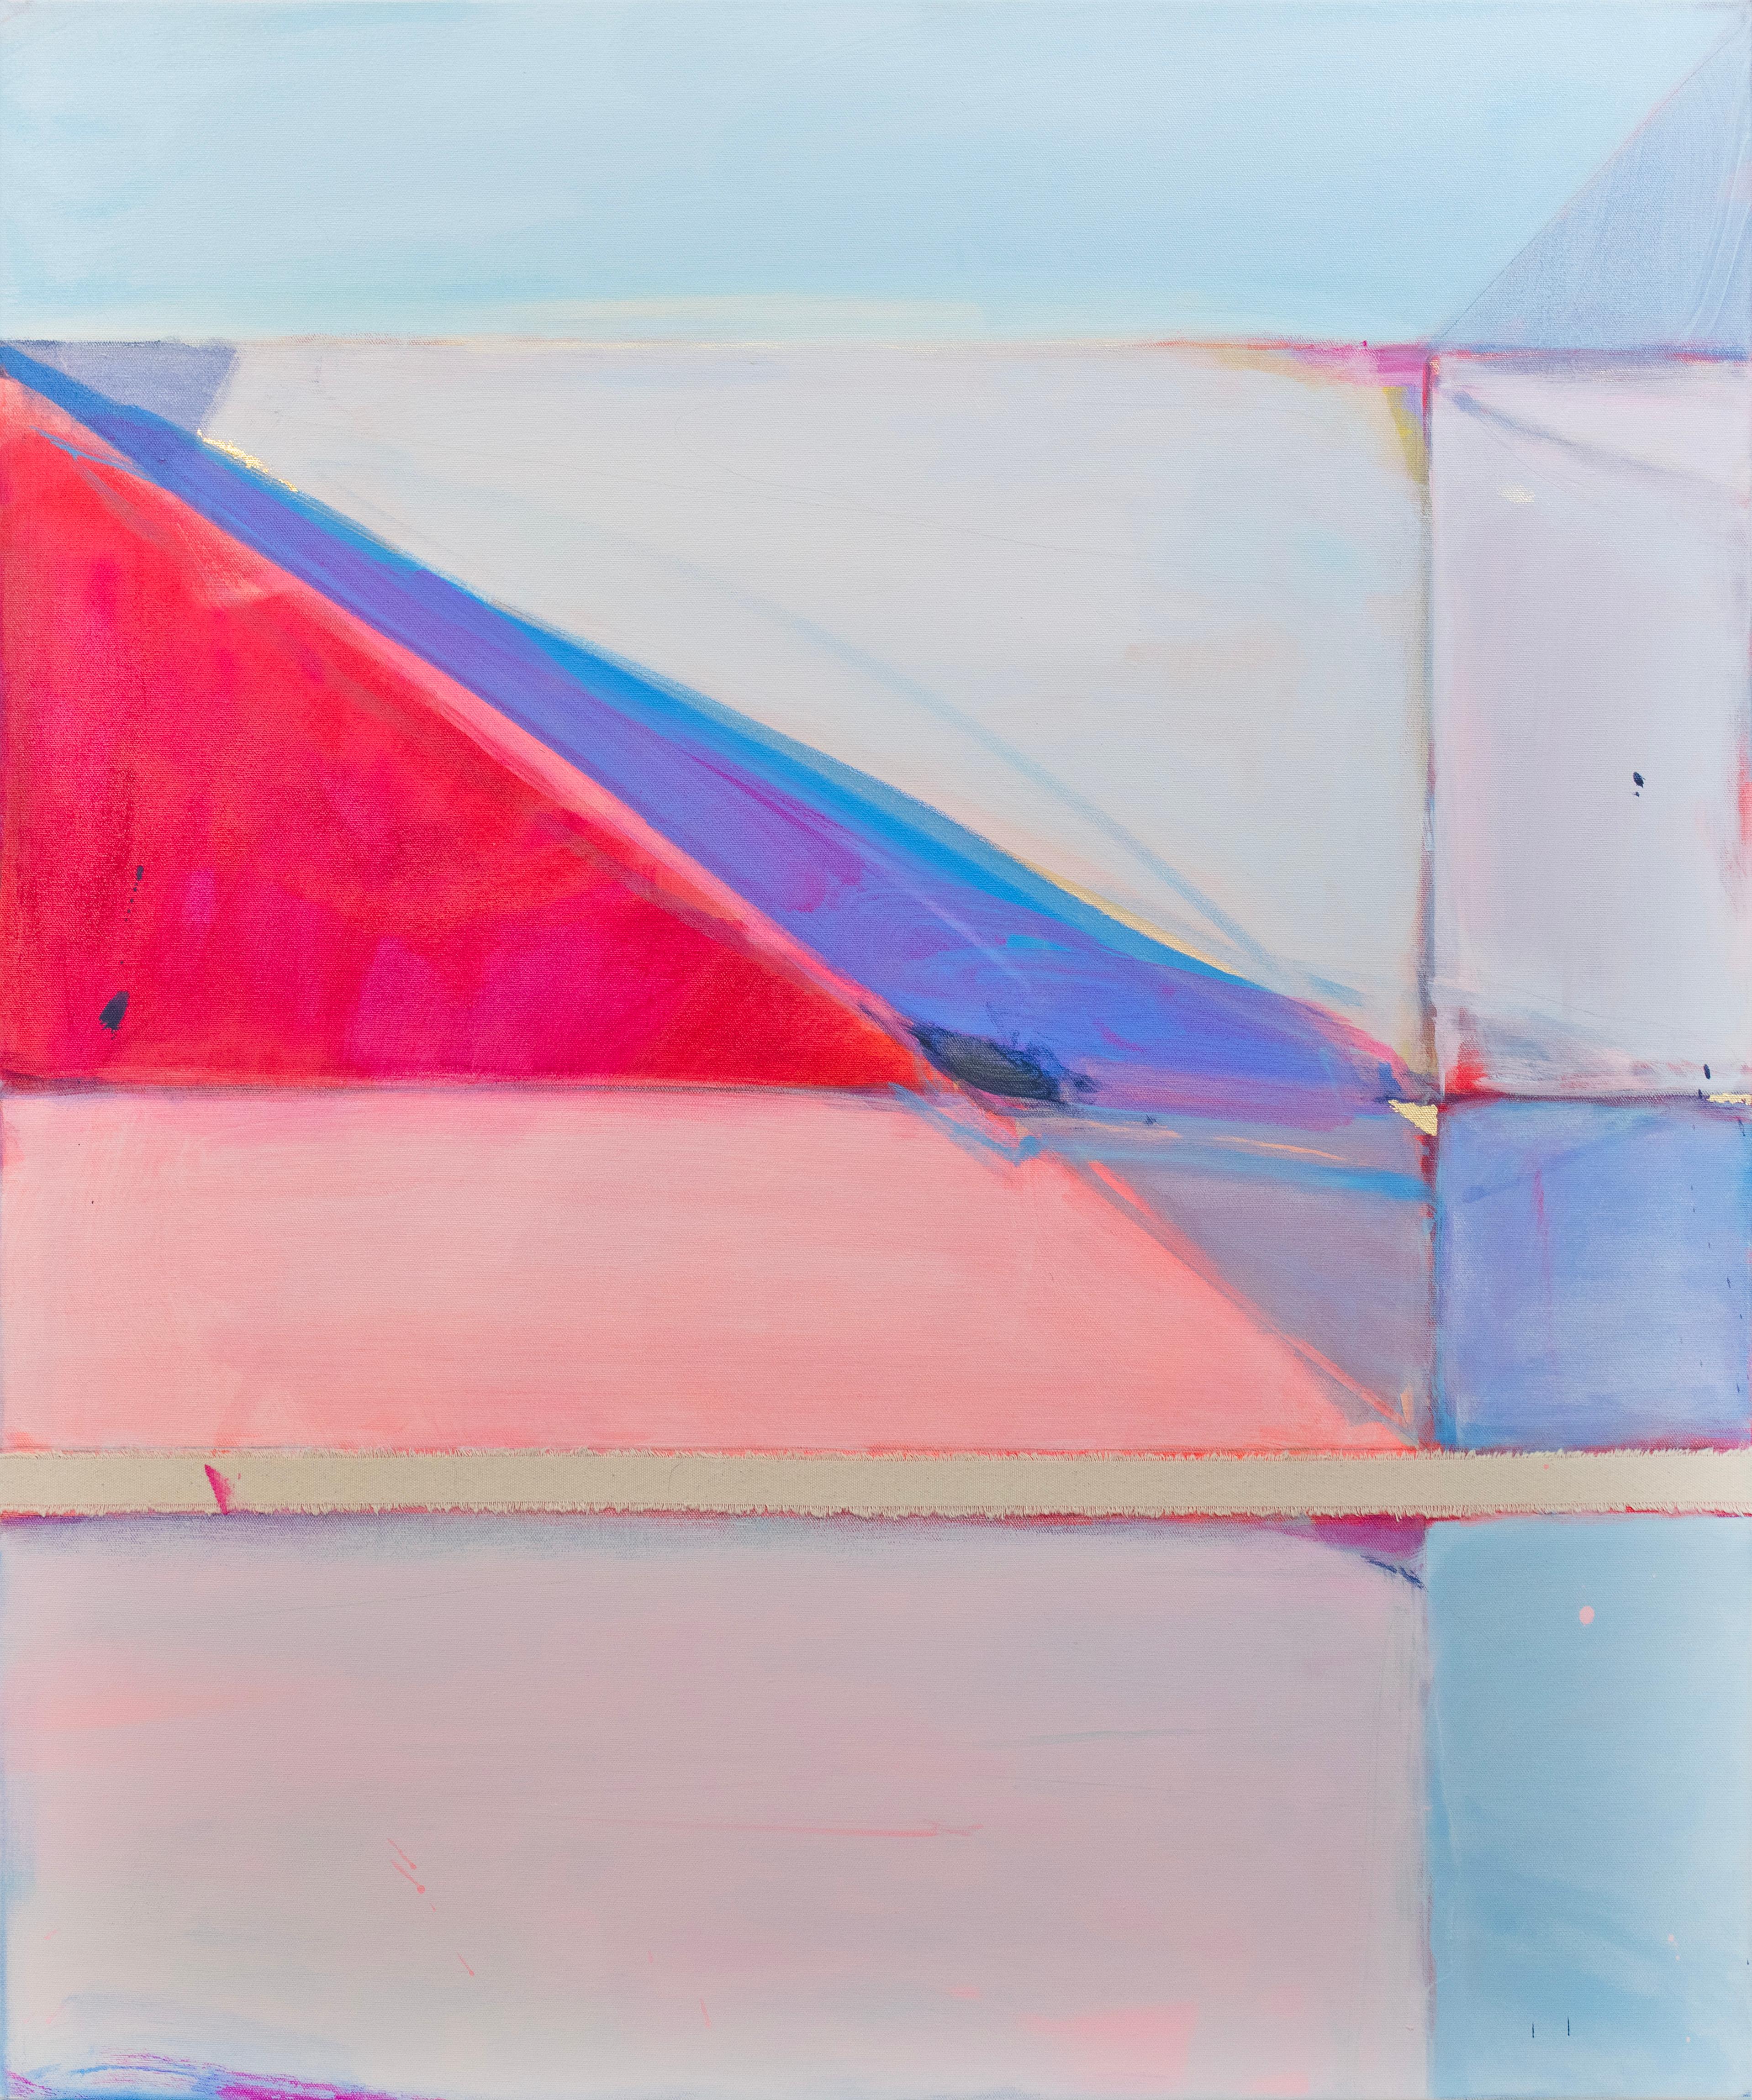 Cette peinture abstraite de Kelly Rossetti est réalisée avec de la peinture acrylique et des morceaux de toile brute assemblés sur une toile enveloppée de galerie. Il présente une palette rose et bleue avec des lignes, des formes et des marques